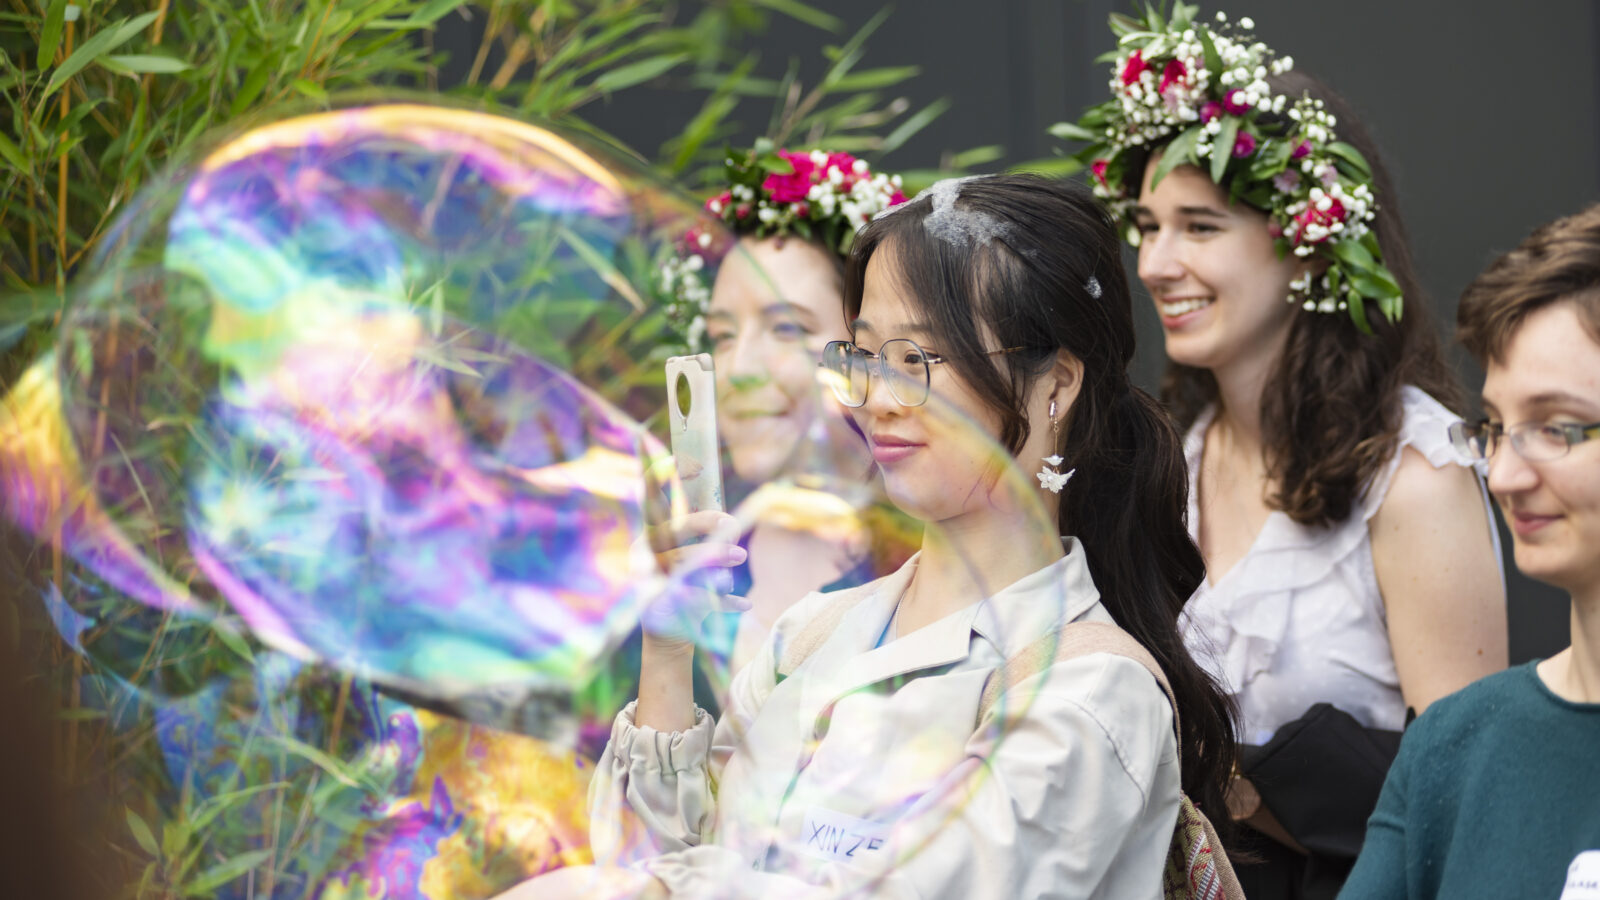 Junge Frau macht ein Foto von einer großen Seifenblase. Hinter ihr stehen zwei Frauen mit Blumenkränzen auf dem Kopf und eine Person mit Brille steht rechts von ihr.